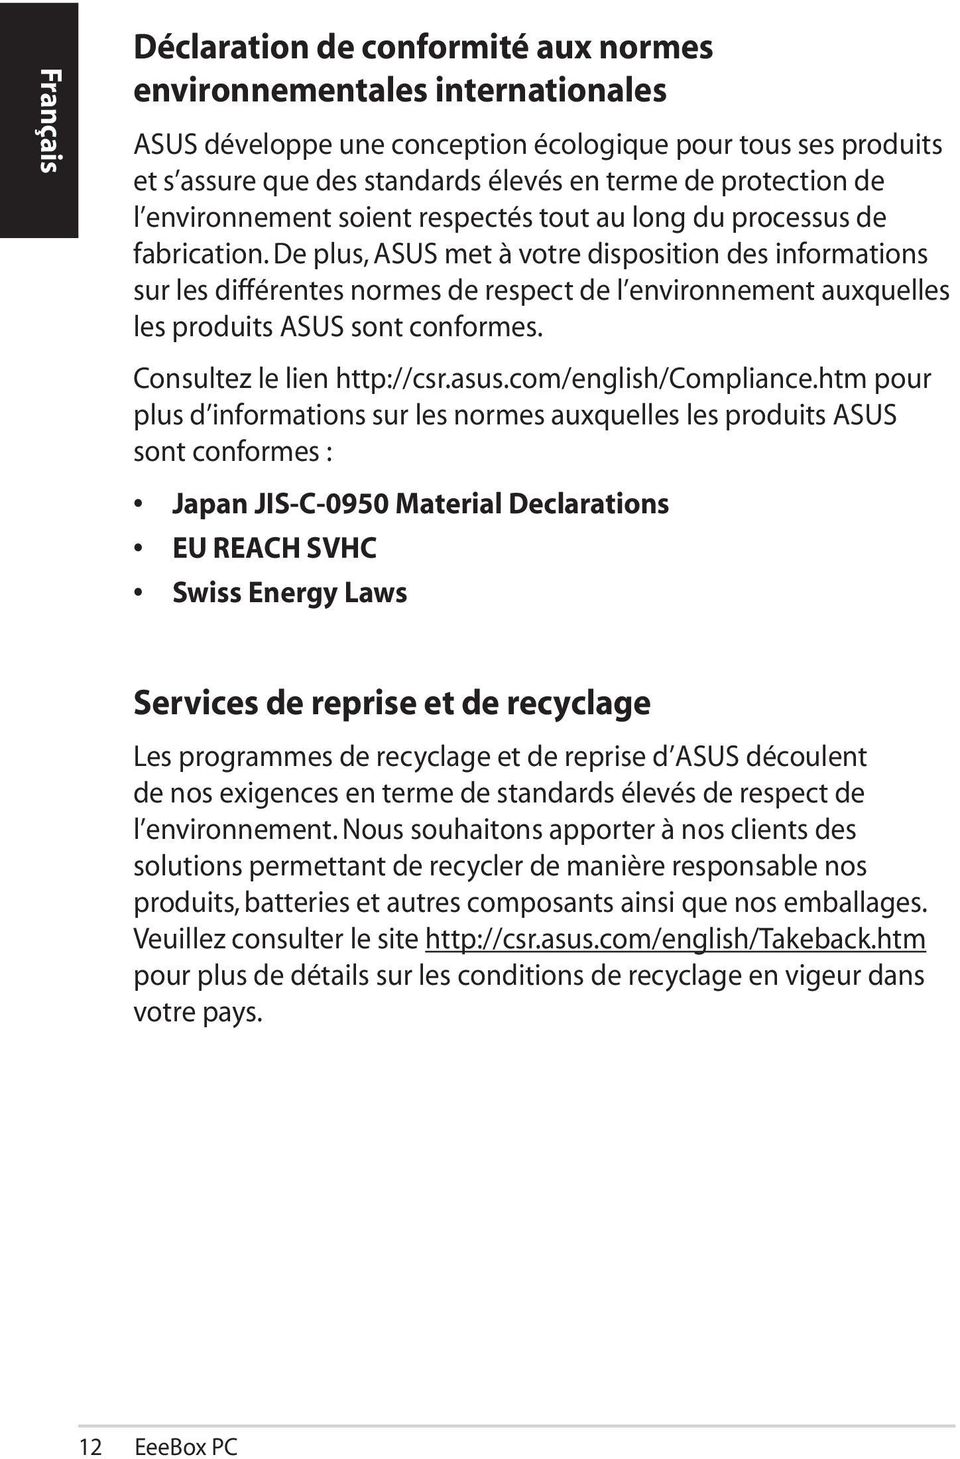 De plus, ASUS met à votre disposition des informations sur les différentes normes de respect de l environnement auxquelles les produits ASUS sont conformes. Consultez le lien http://csr.asus.